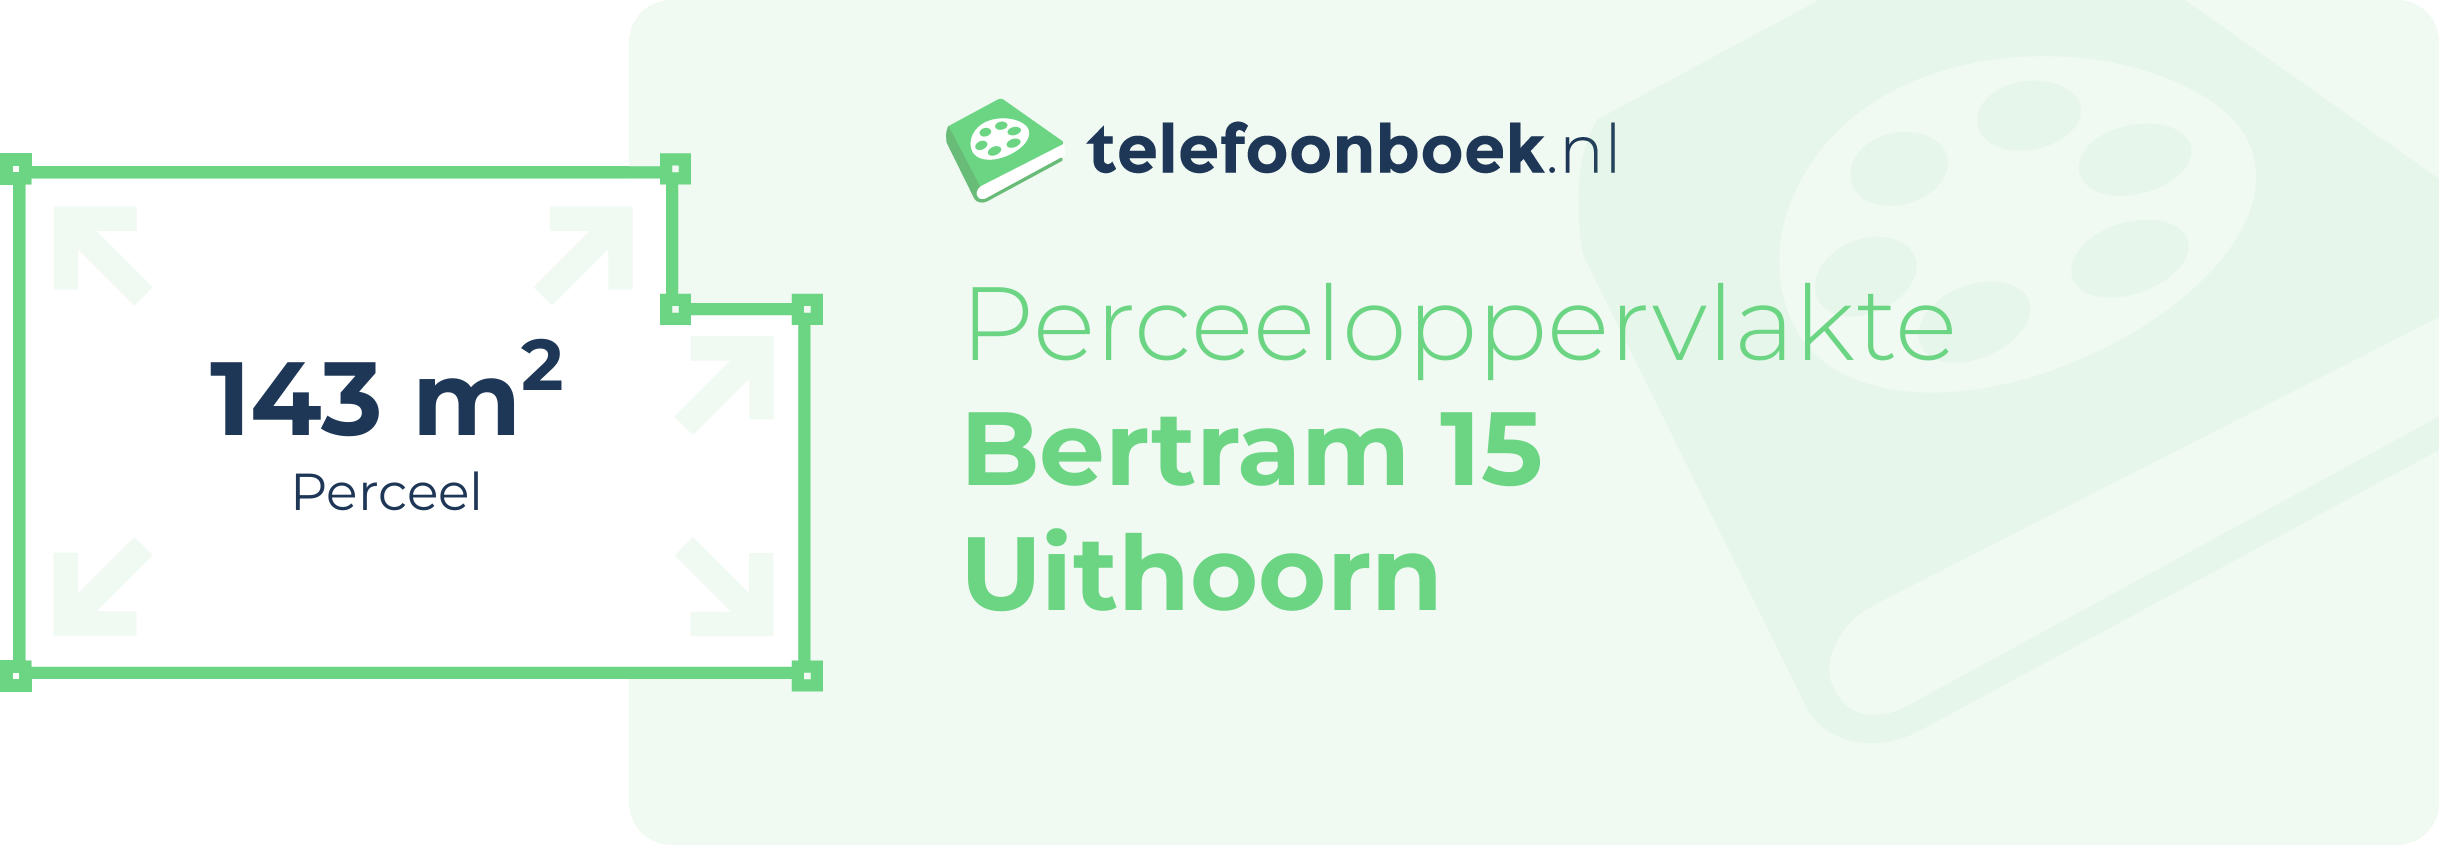 Perceeloppervlakte Bertram 15 Uithoorn